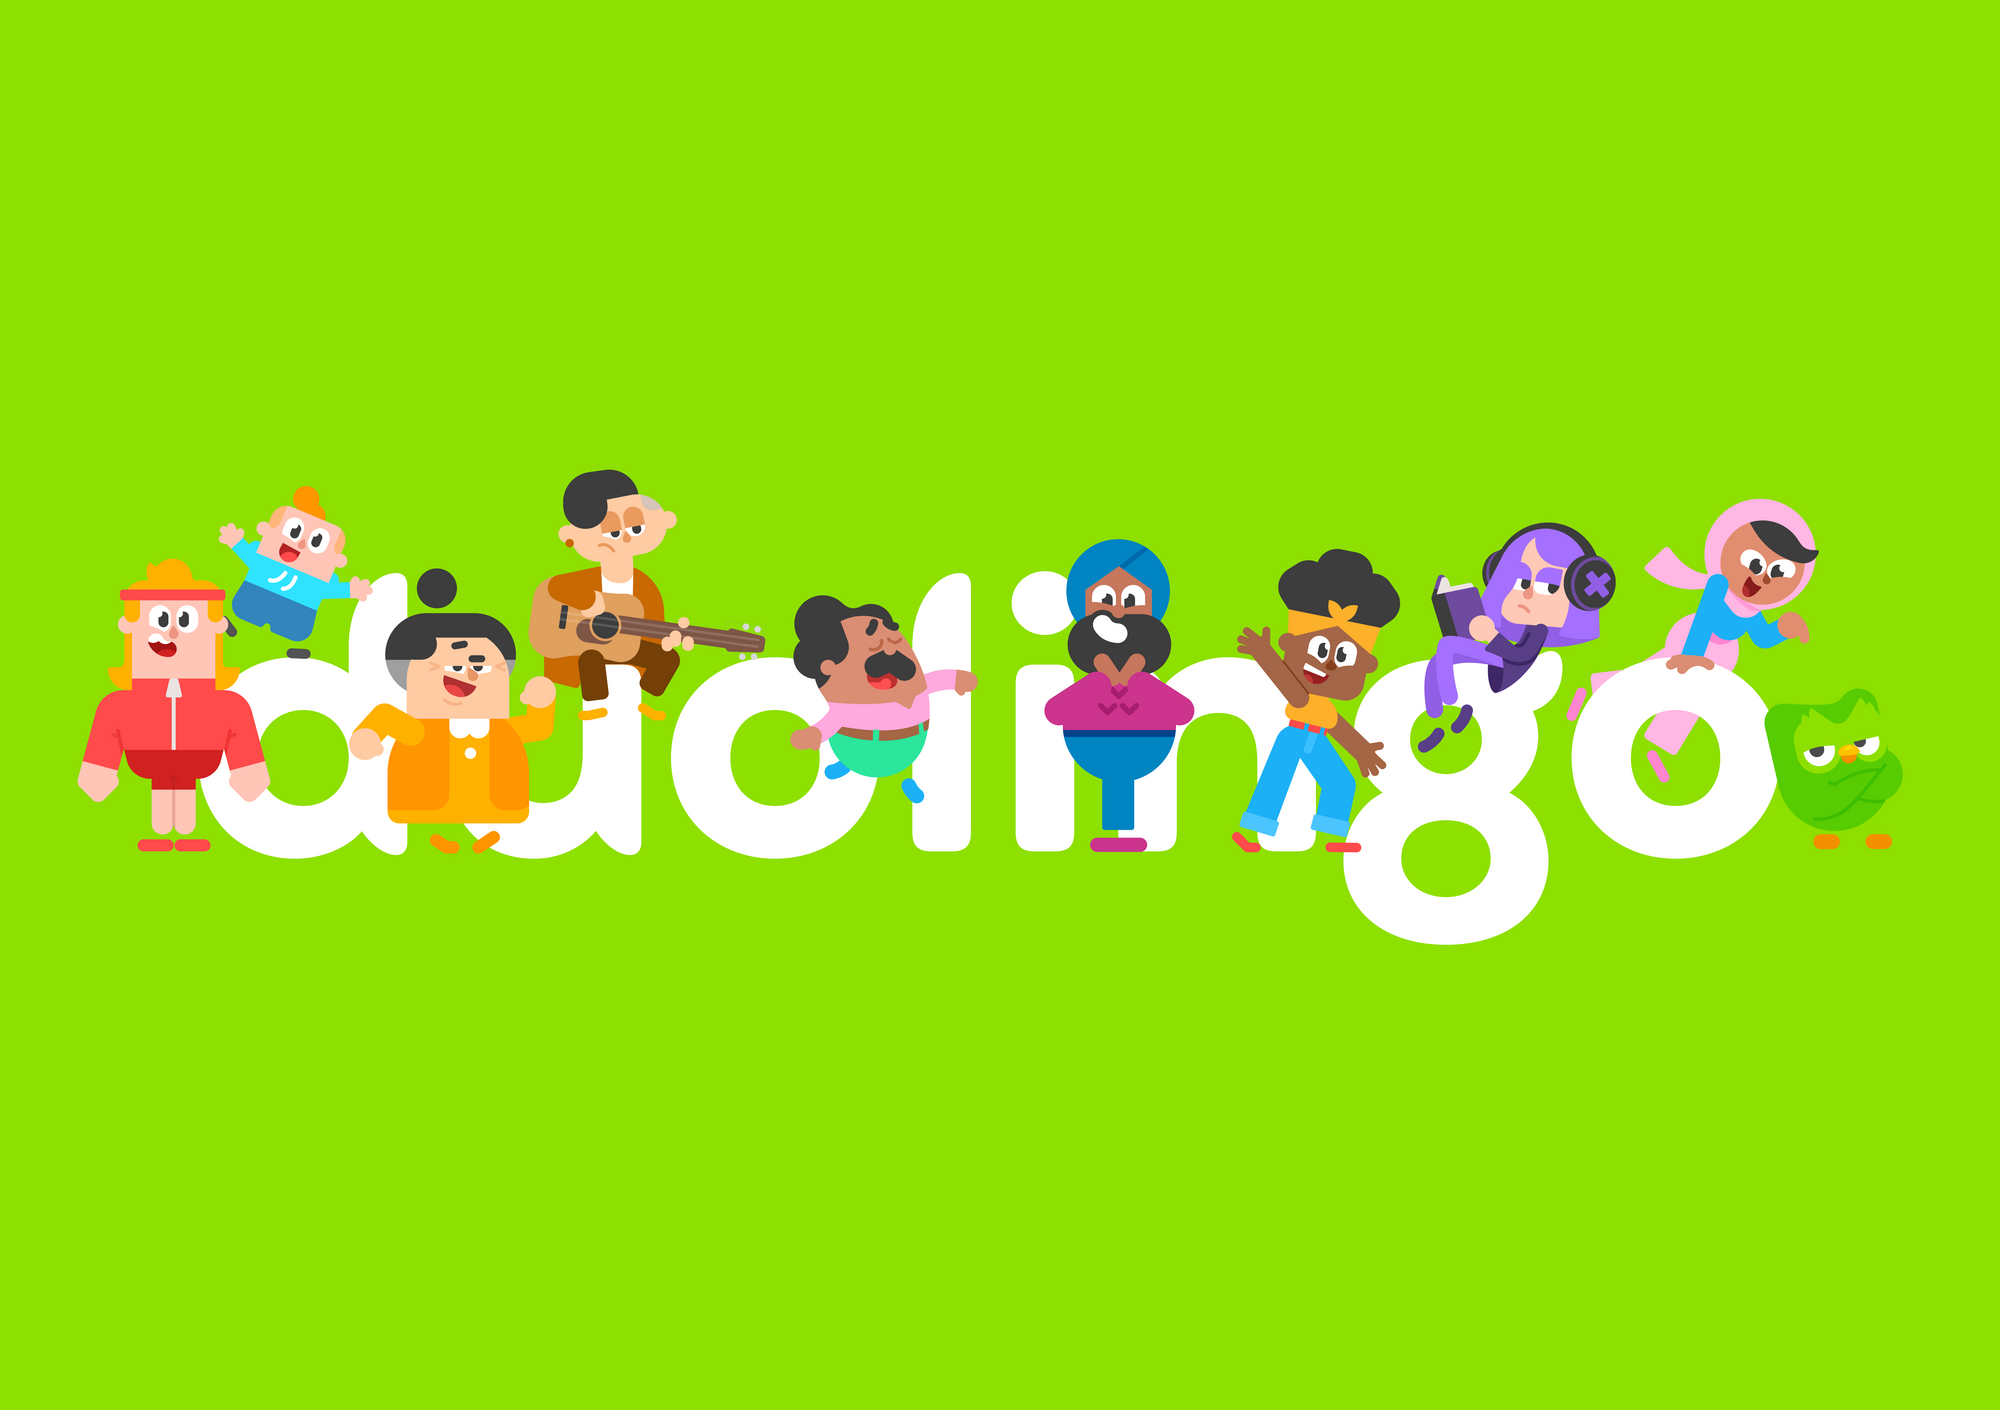 Duolingo-Character-W83f5beb356436690.png